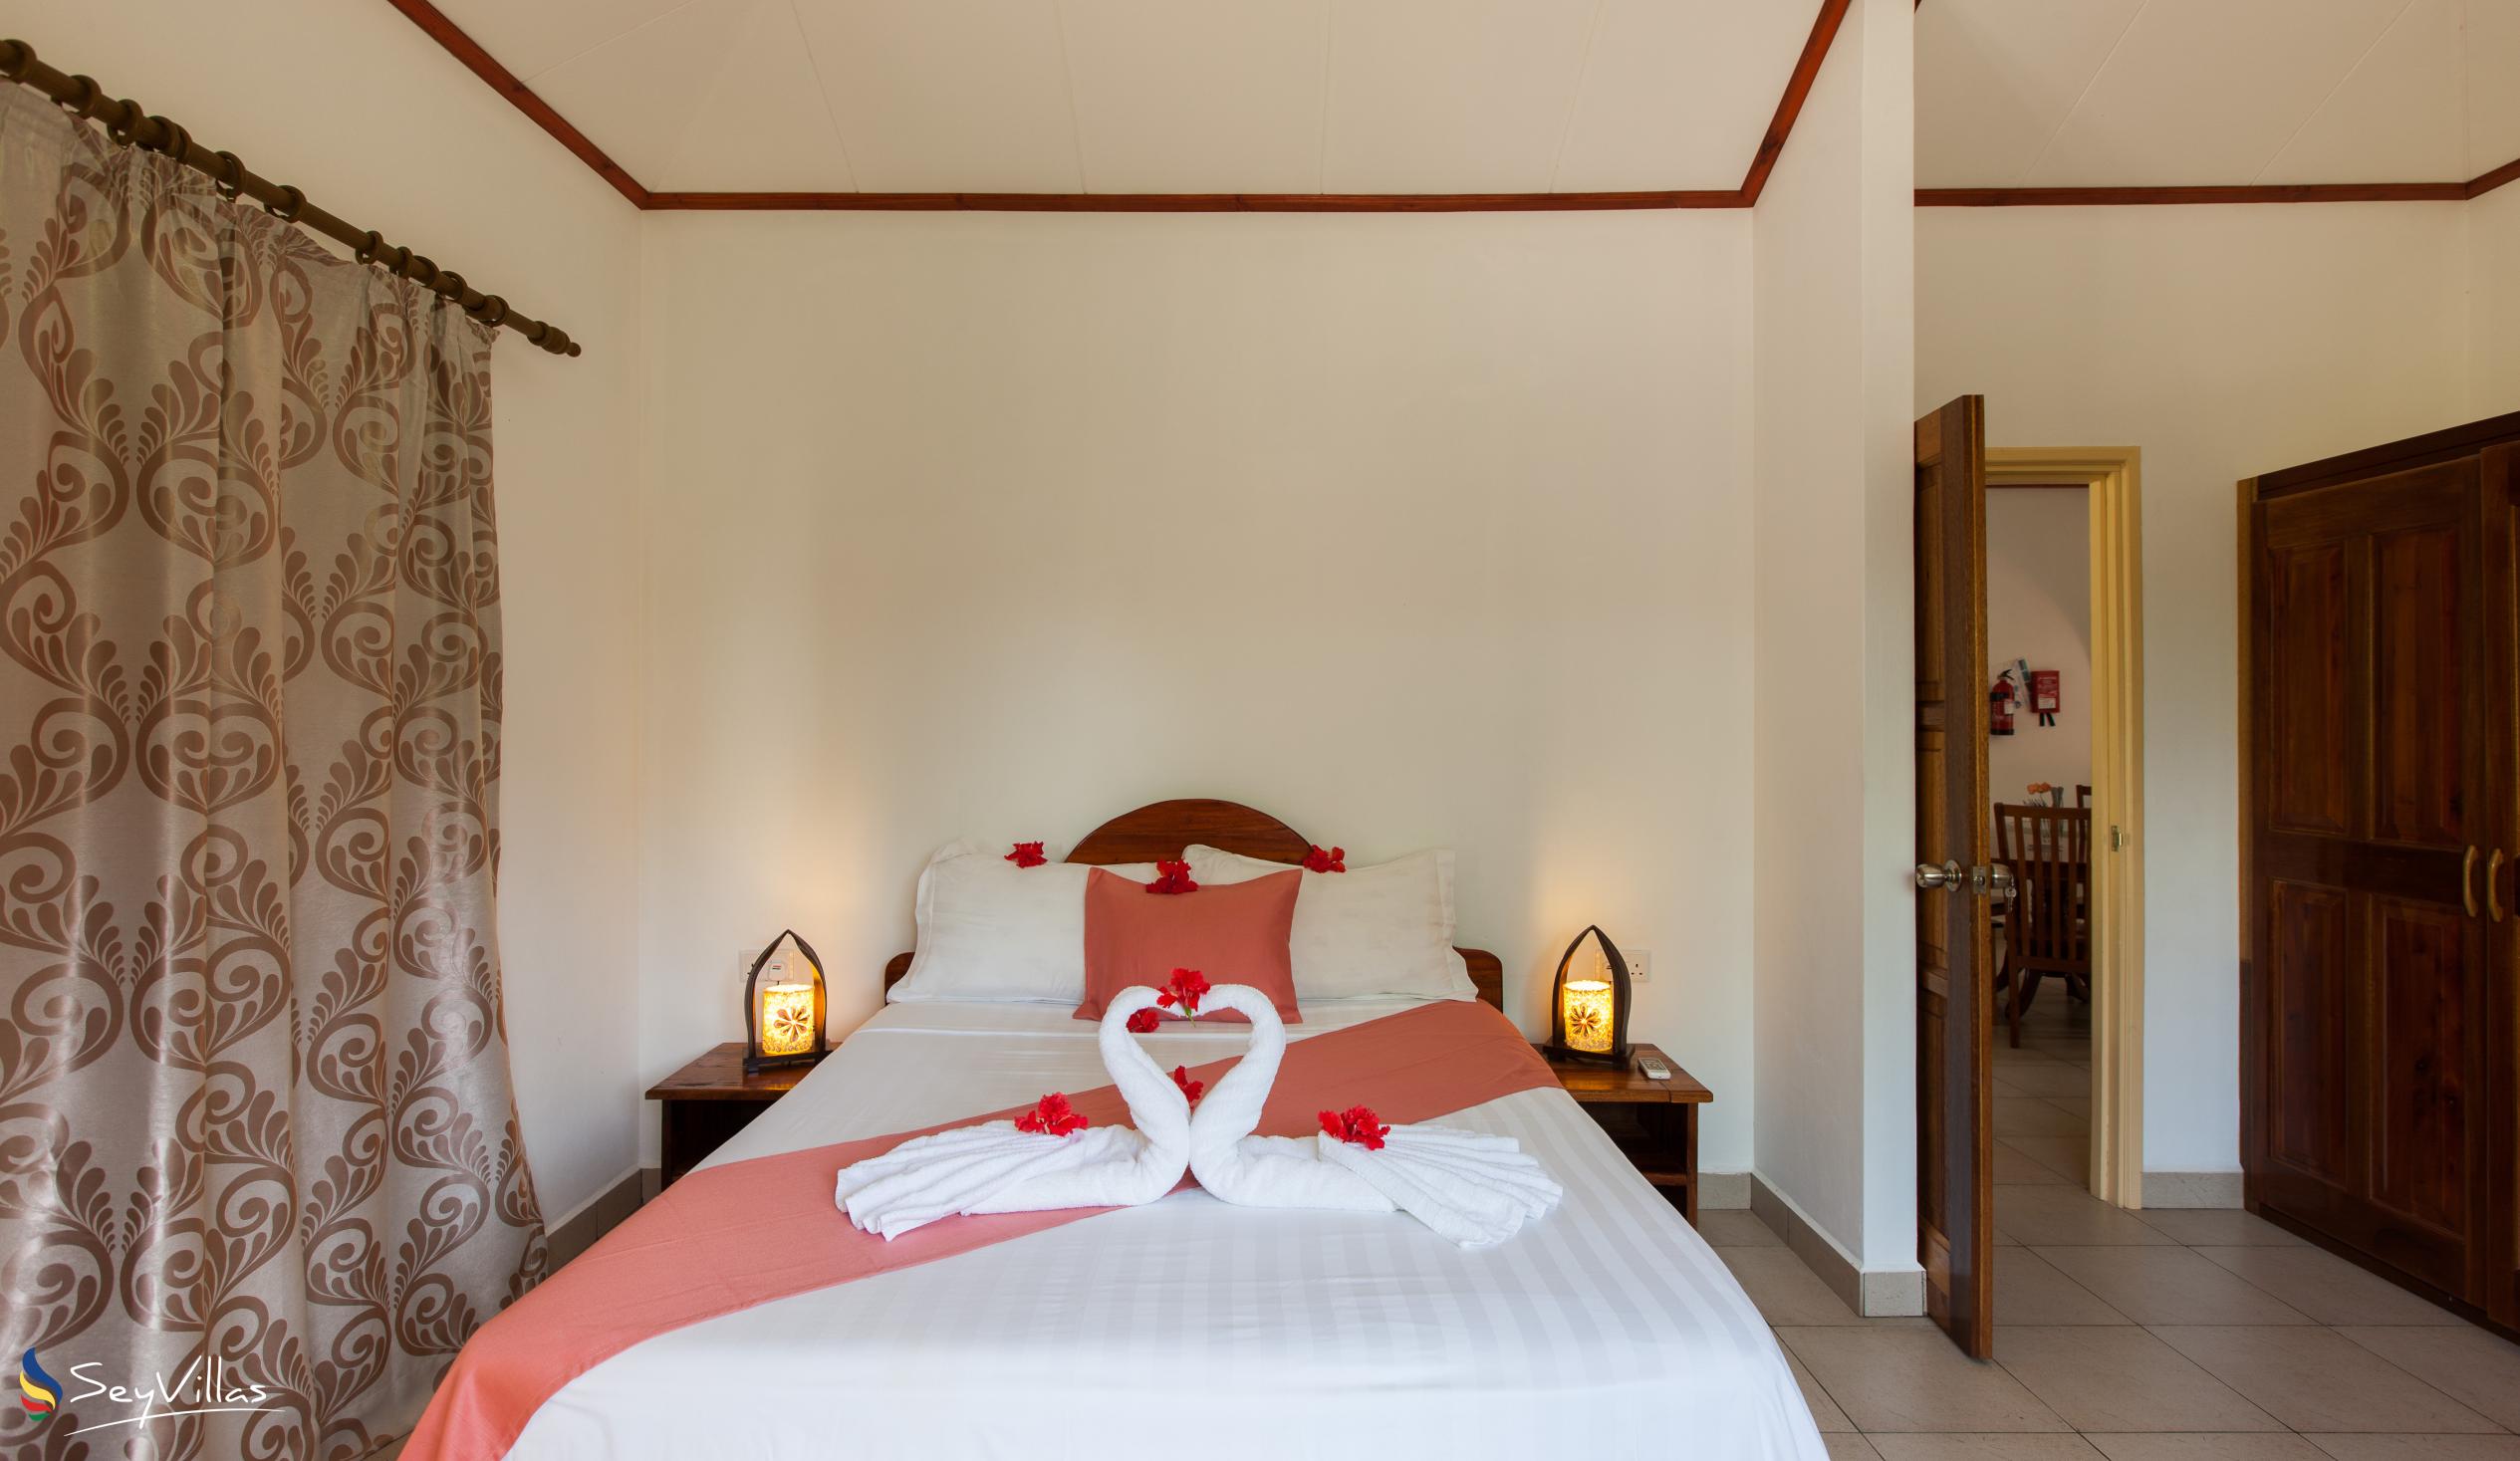 Foto 16: Hostellerie La Digue - Chalet mit 3 Schlafzimmern - La Digue (Seychellen)